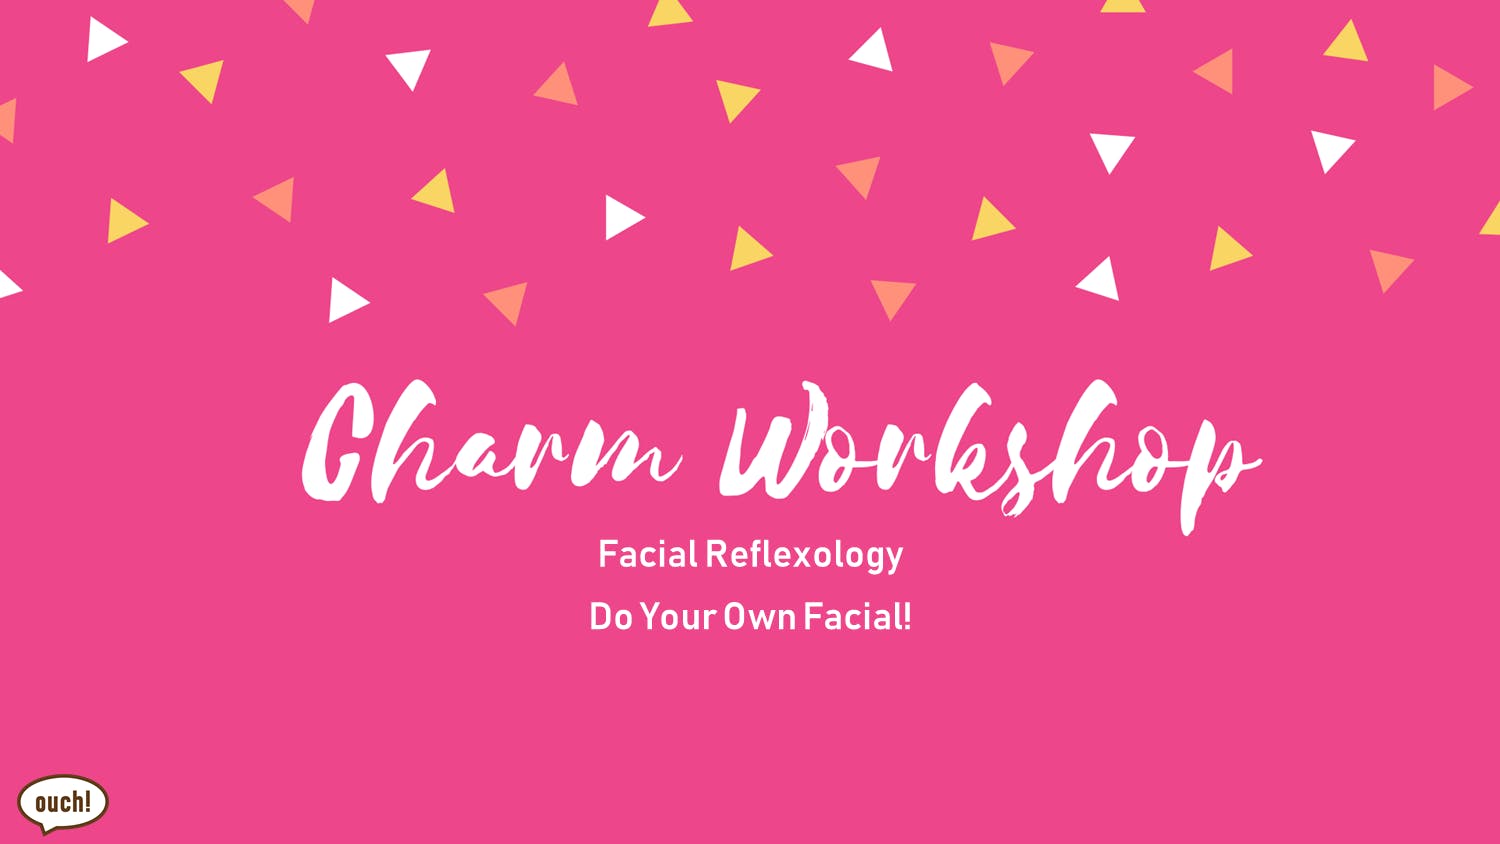 Charm Workshop (Facial Reflexology)